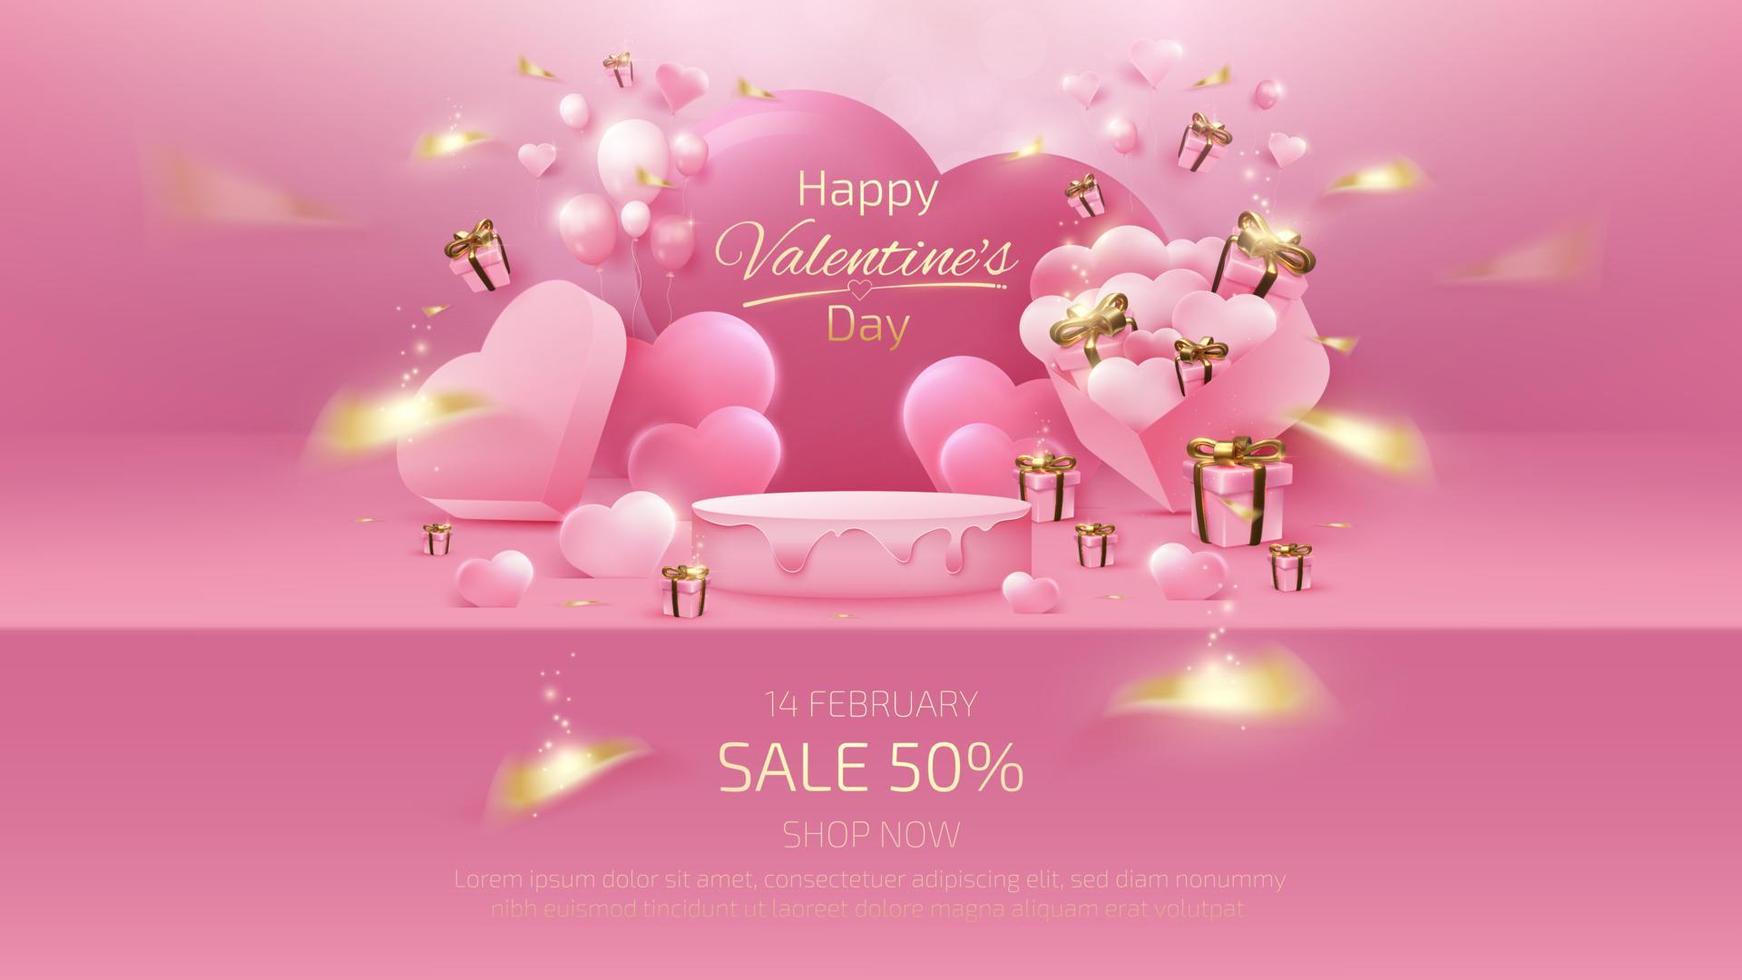 sfondo di san valentino e modello di banner di vendita con scaffale rosa 3d realistico ed elementi di confezione regalo, nastro, palloncino a forma di cuore con effetti di luce glitterata e bokeh. vettore